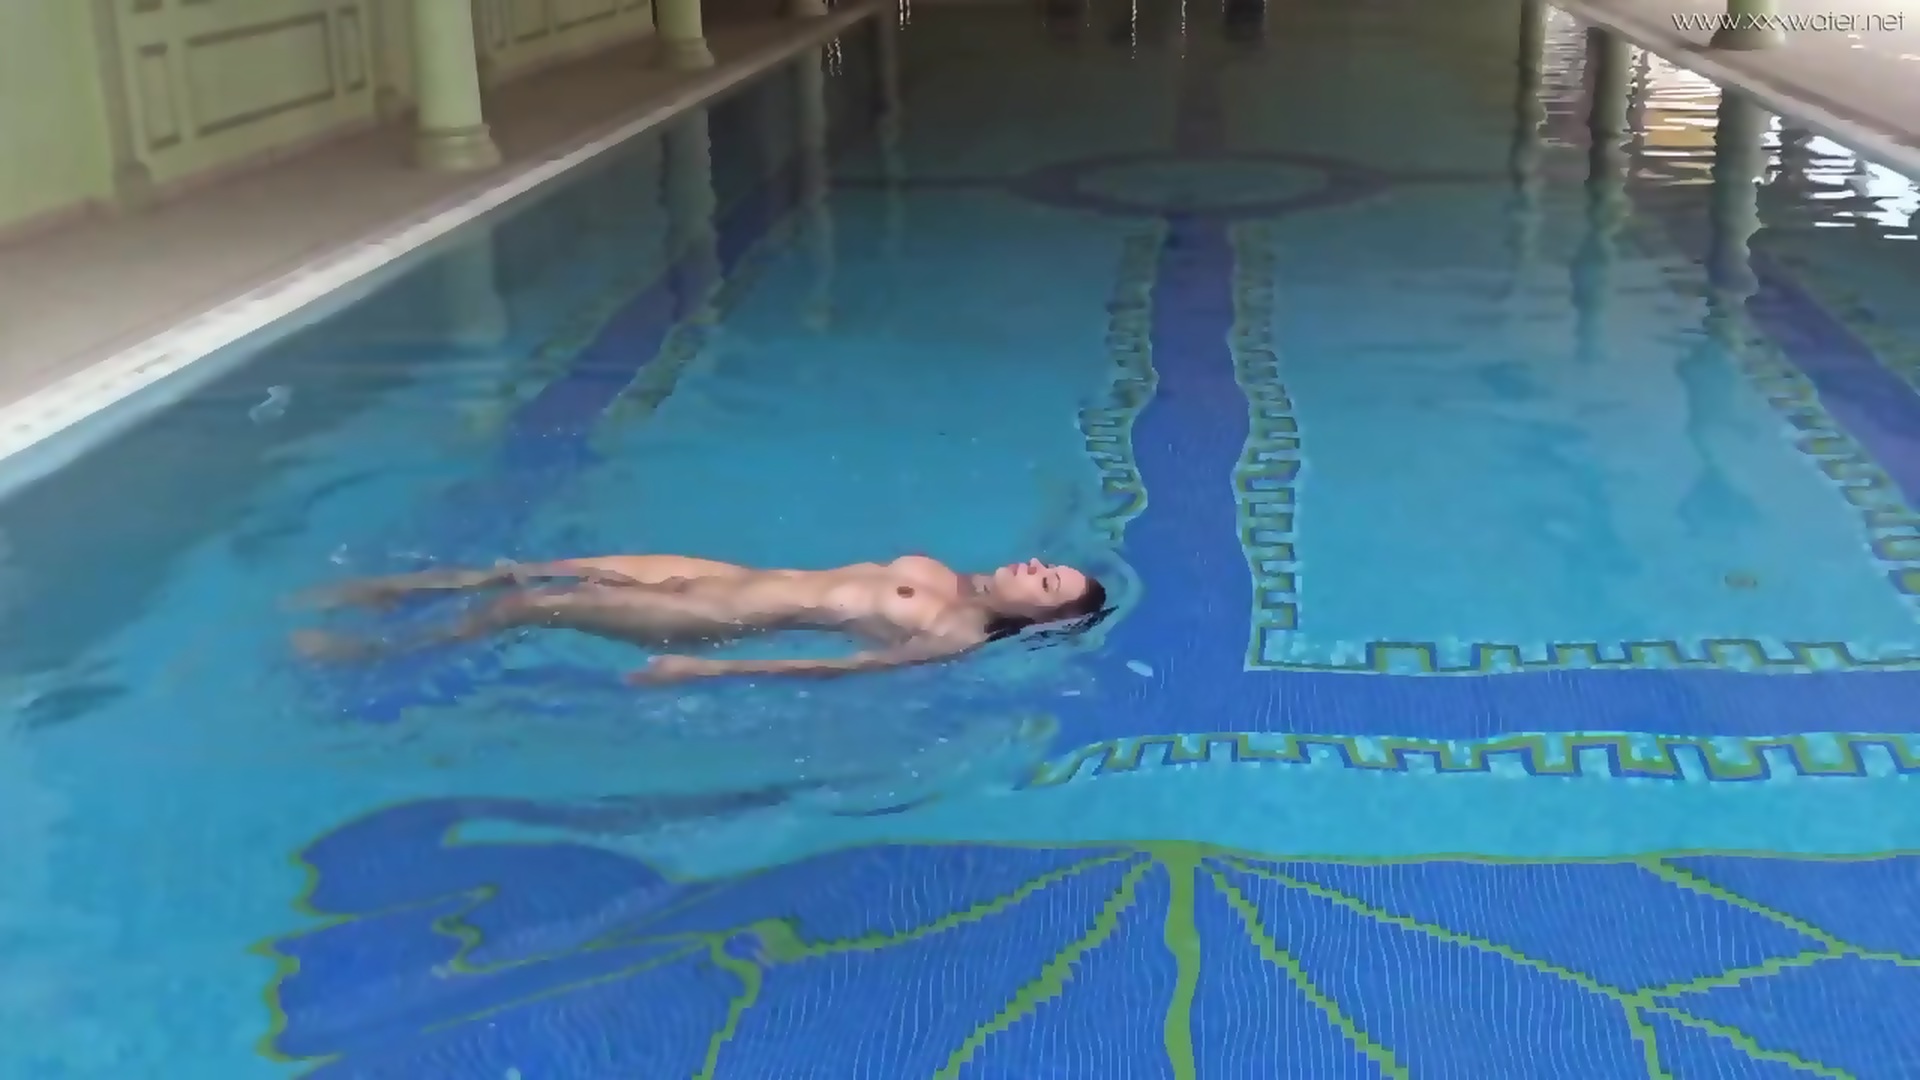 Sazan Cheharda On And Underwater Naked Swimming Eporner